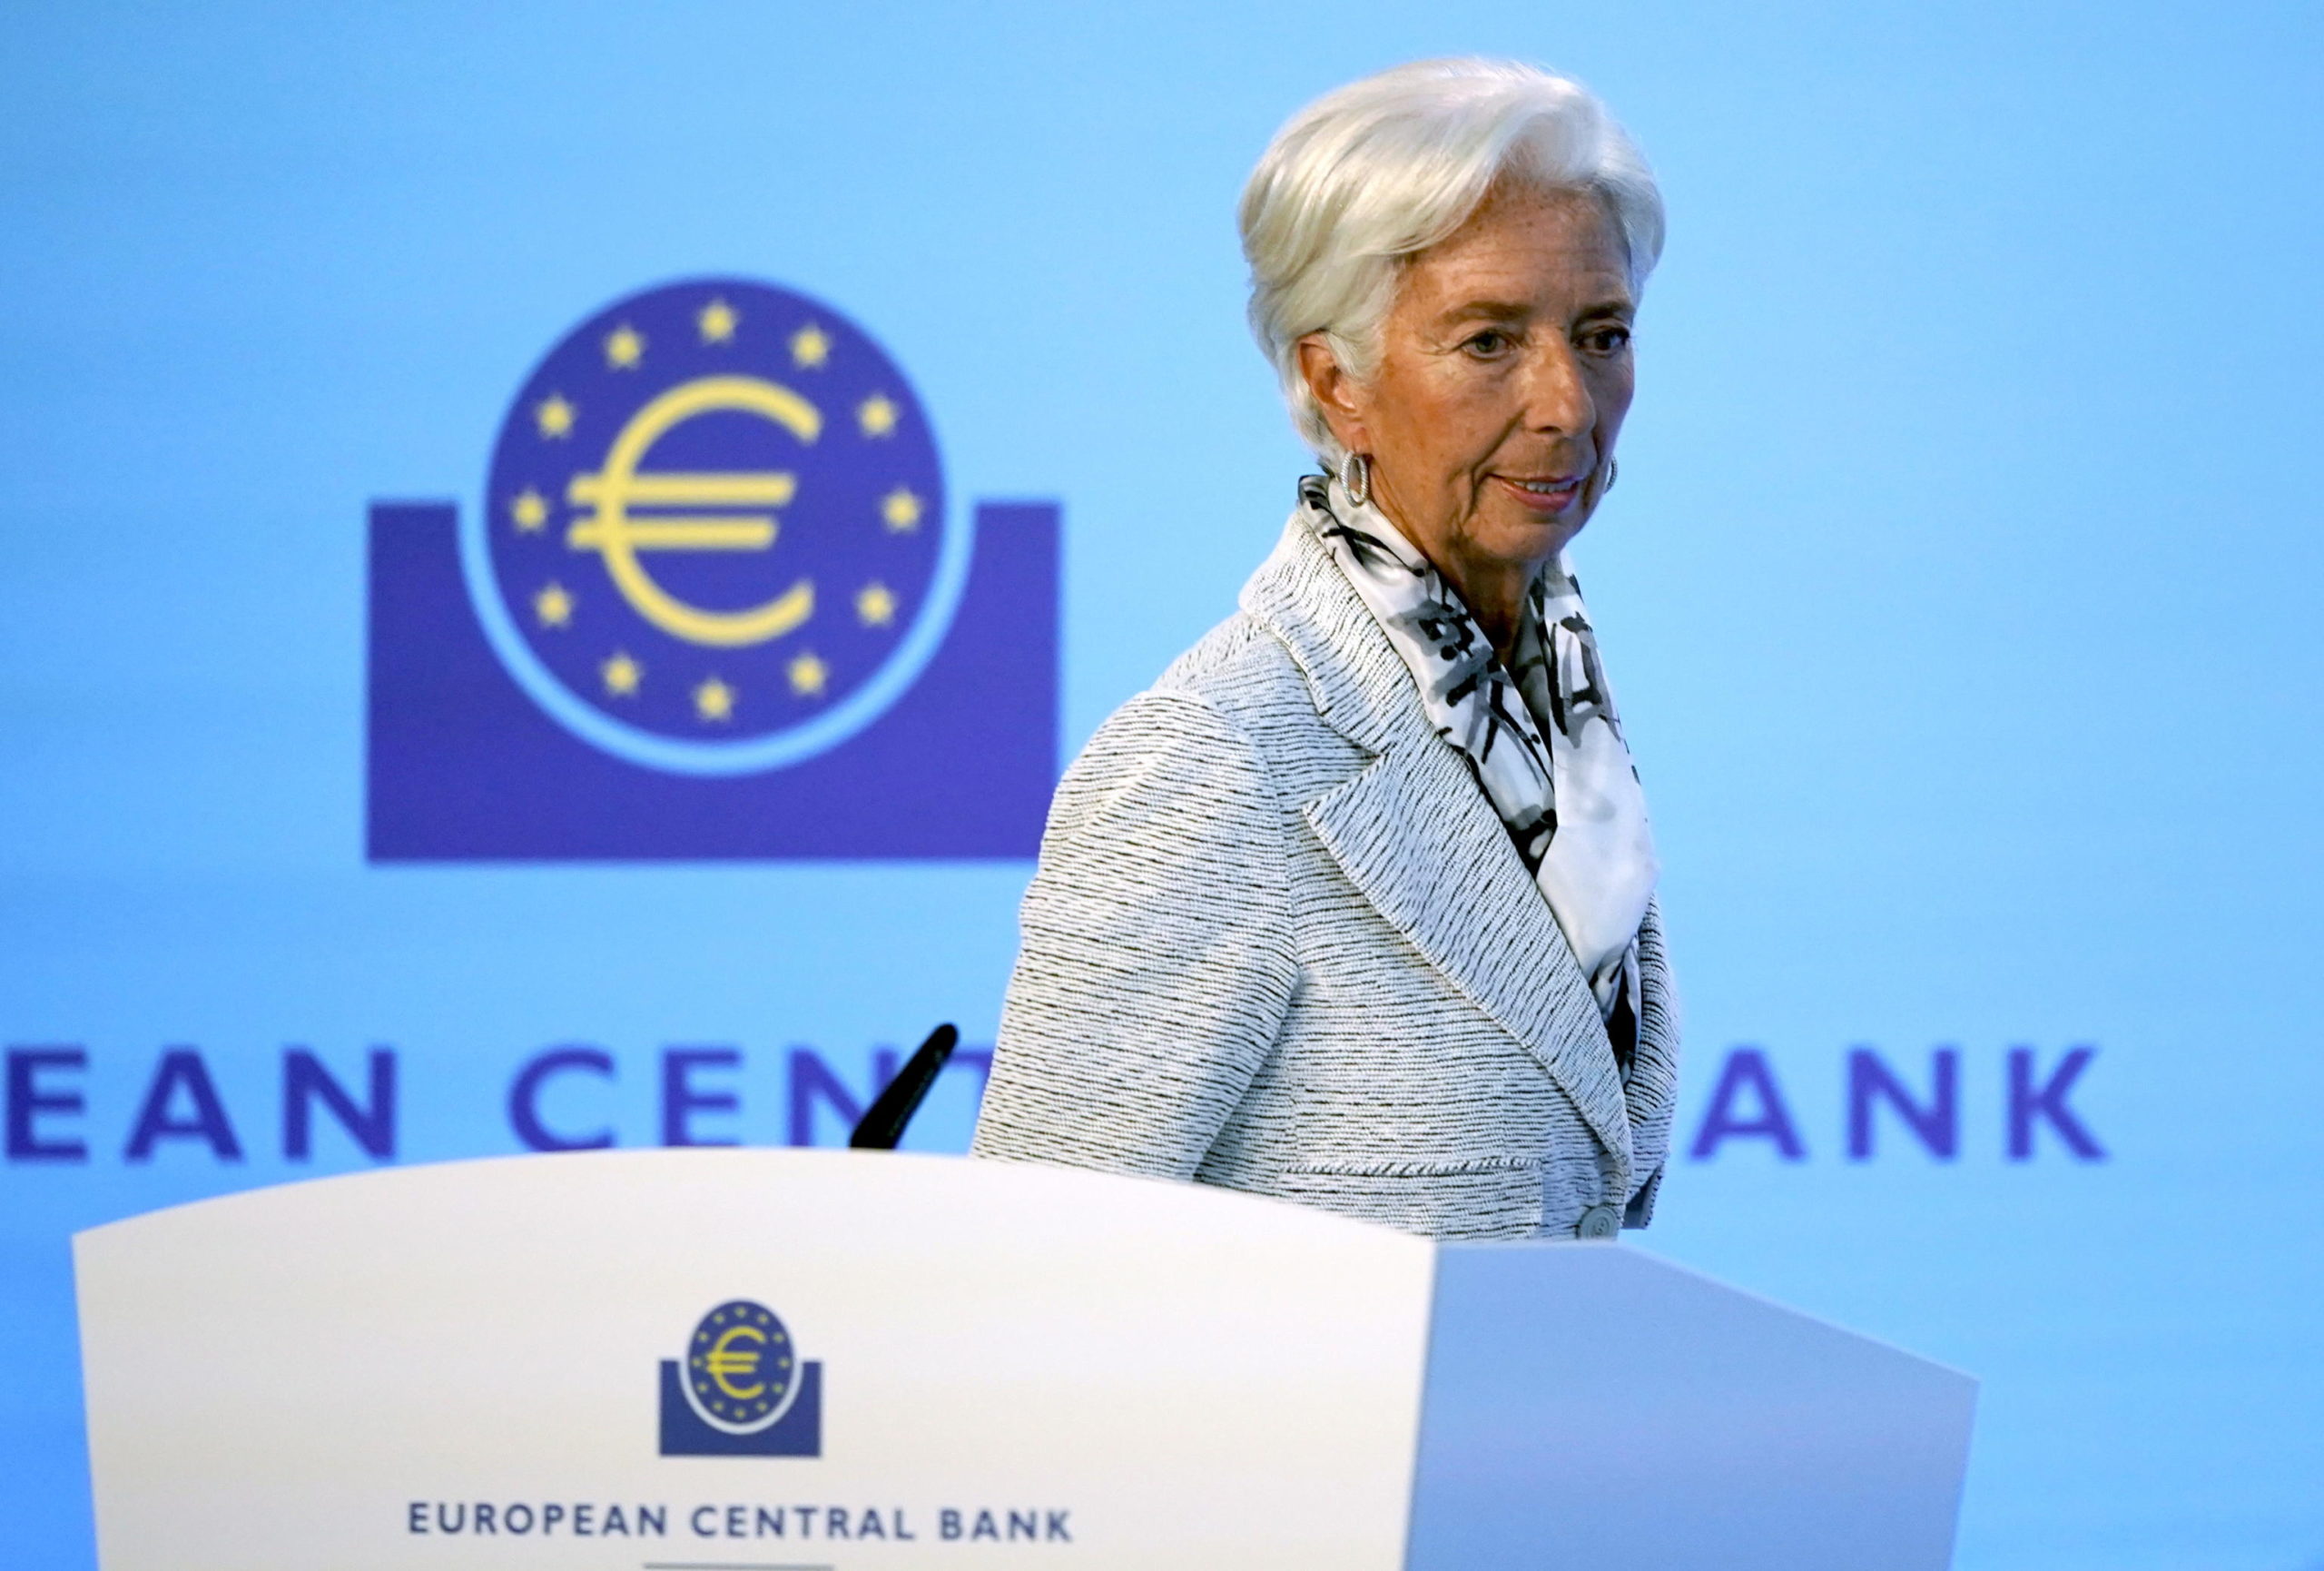 Bce in riunione: cosa potrebbe decidere su tassi e banche